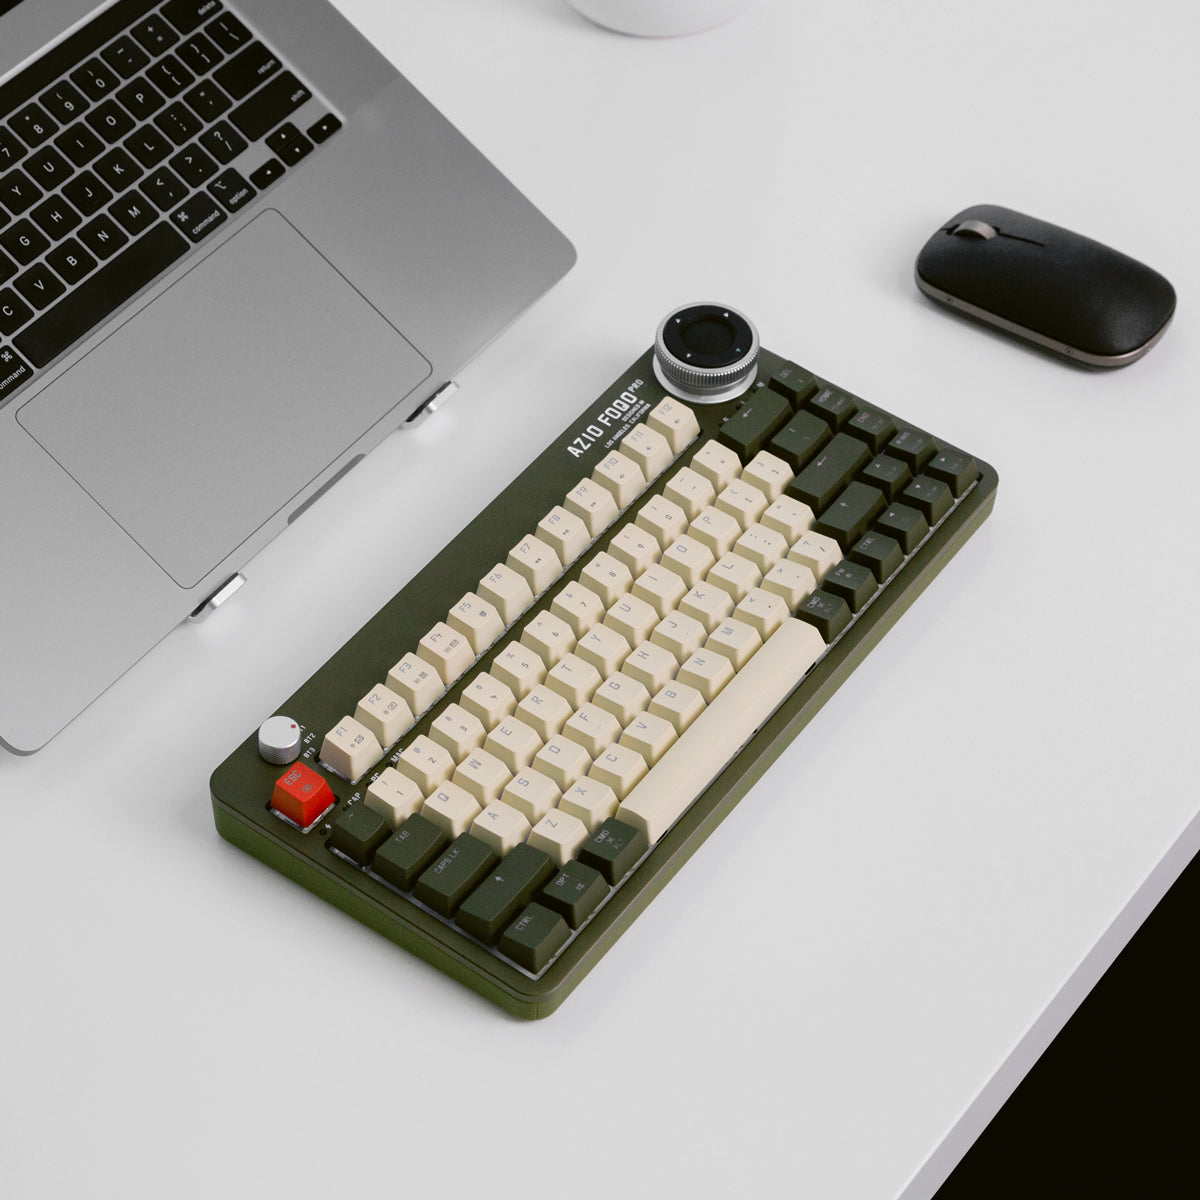 Foqo pro draadloos hot-swappable toetsenbord